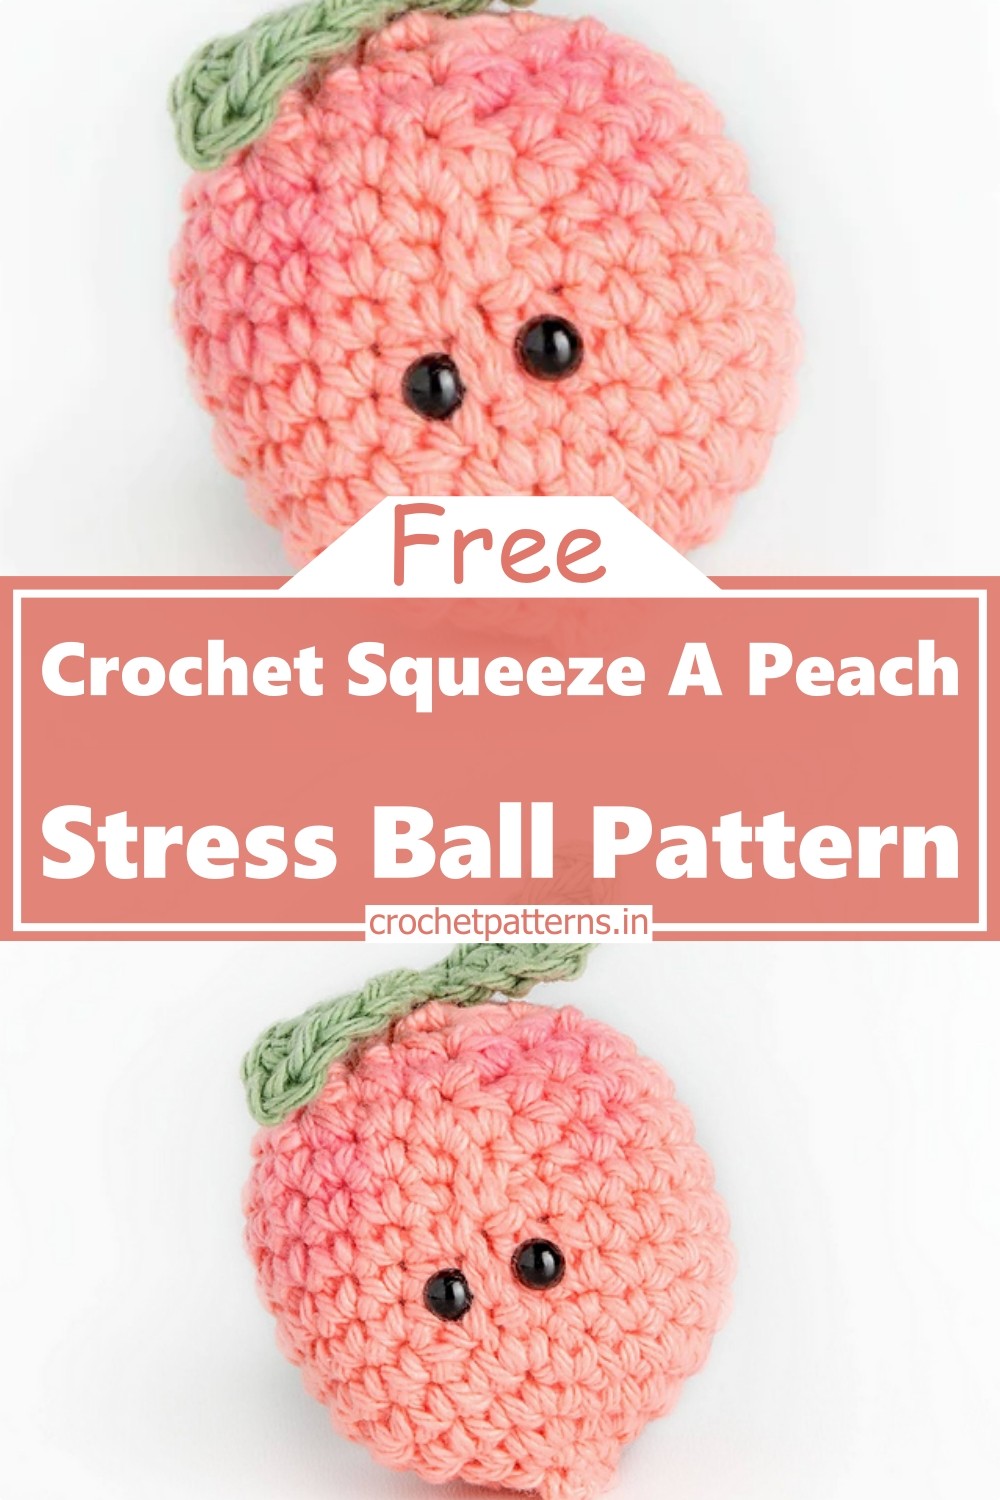 Crochet Squeeze A Peach Stress Ball Pattern